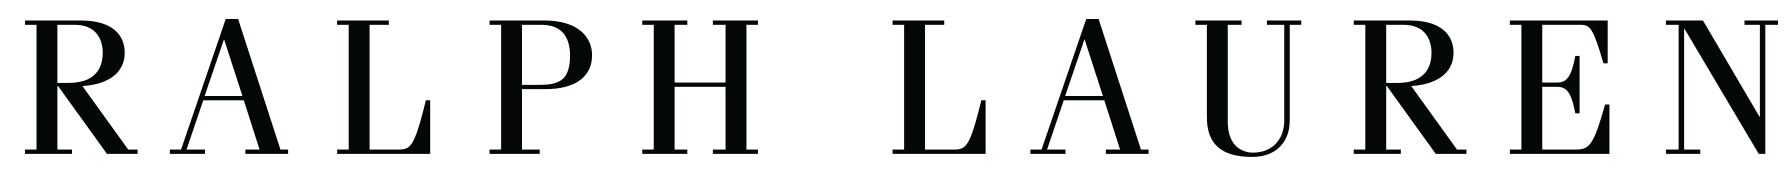 Ralph Lauren | Better Business Bureau® Profile